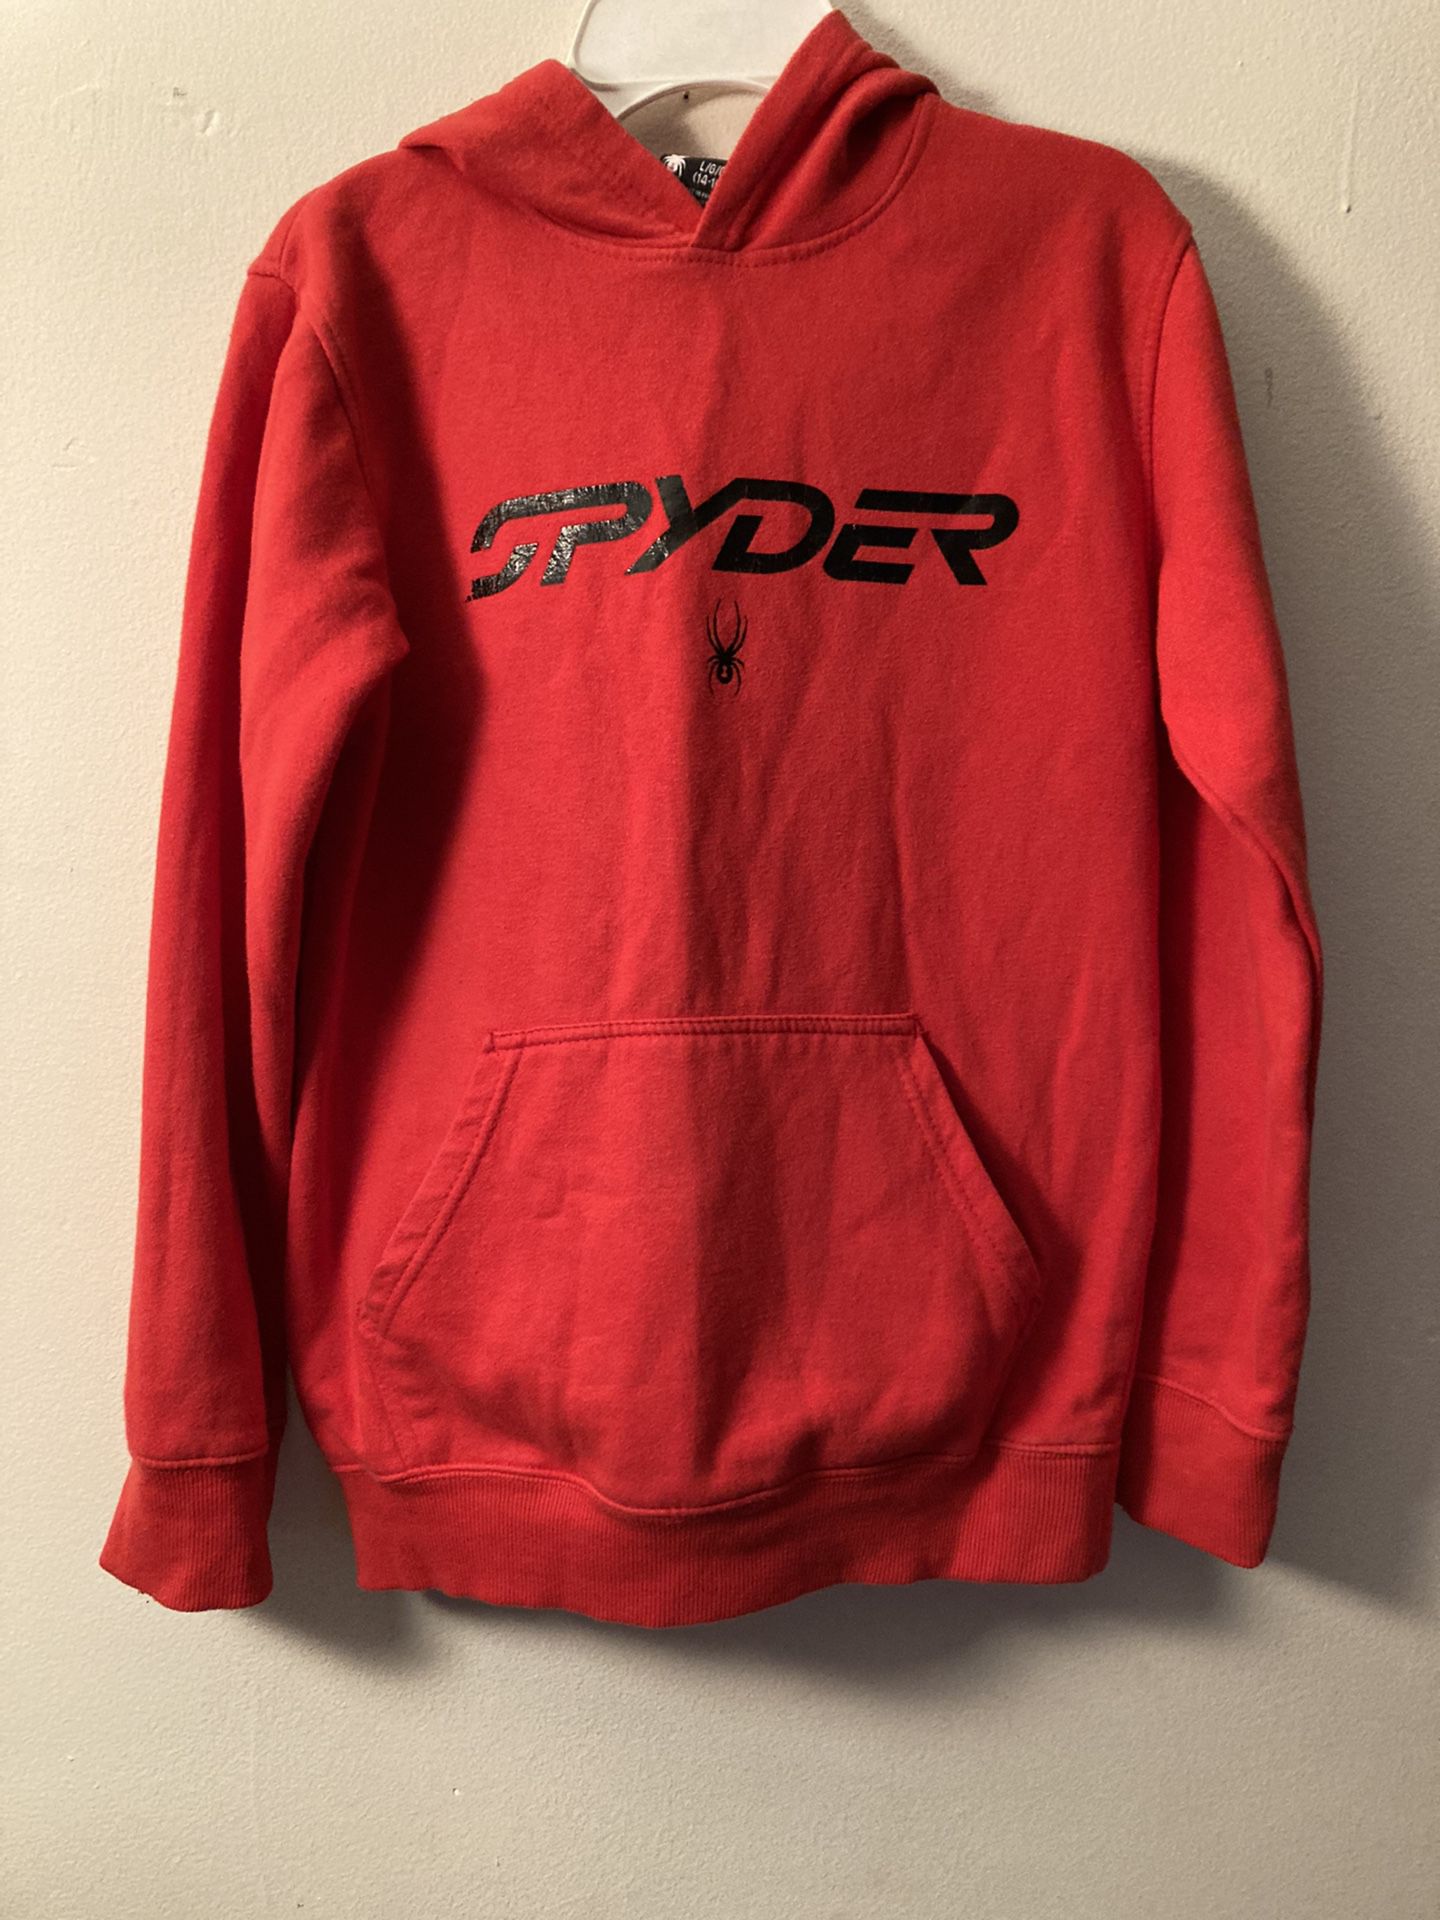 Spyder Kids Hoodie Sweatshirt